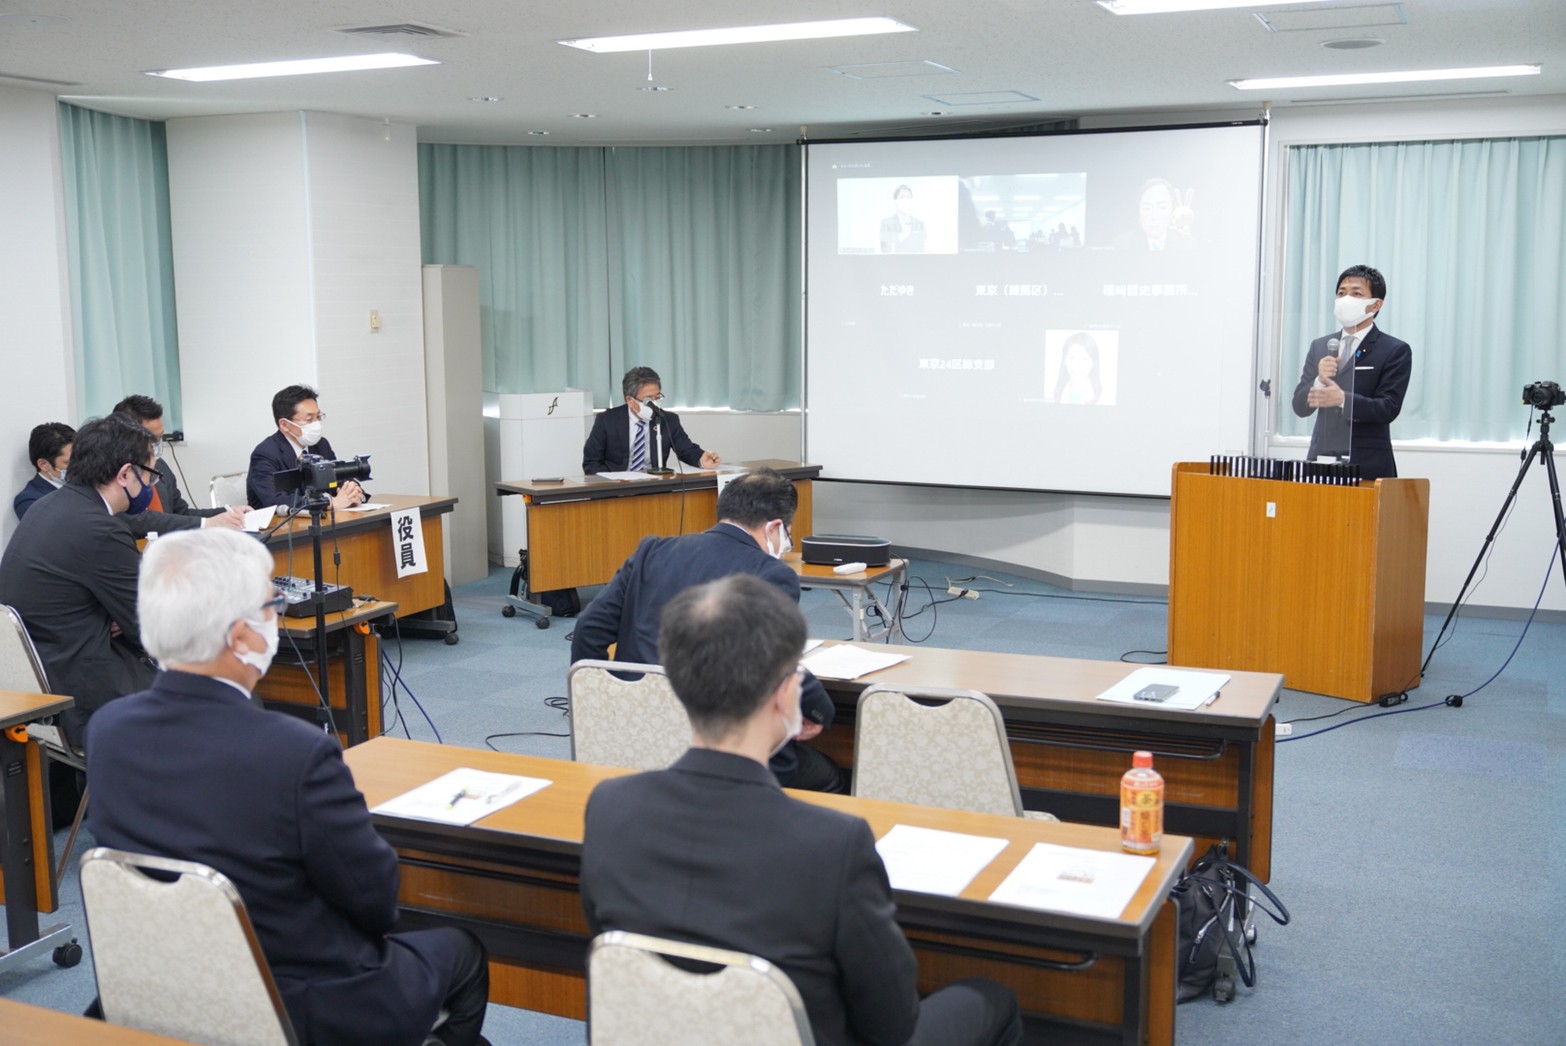 【東京】「新しい政治を切り拓き、果敢に挑戦する」玉木代表が東京都連定期大会で挨拶